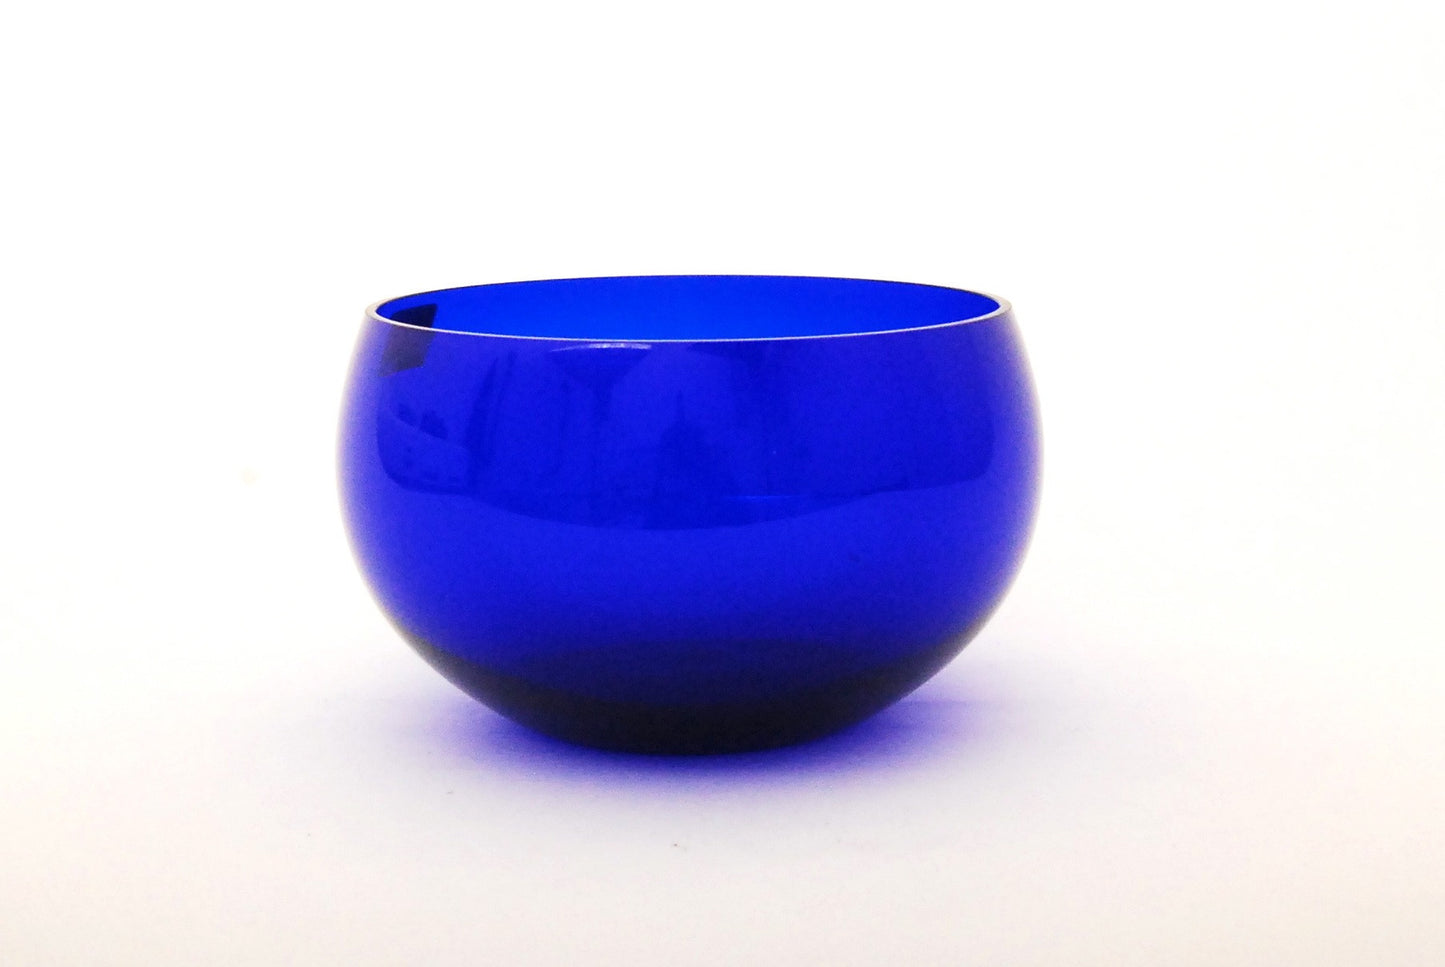 Blue glass bowl by Henriques